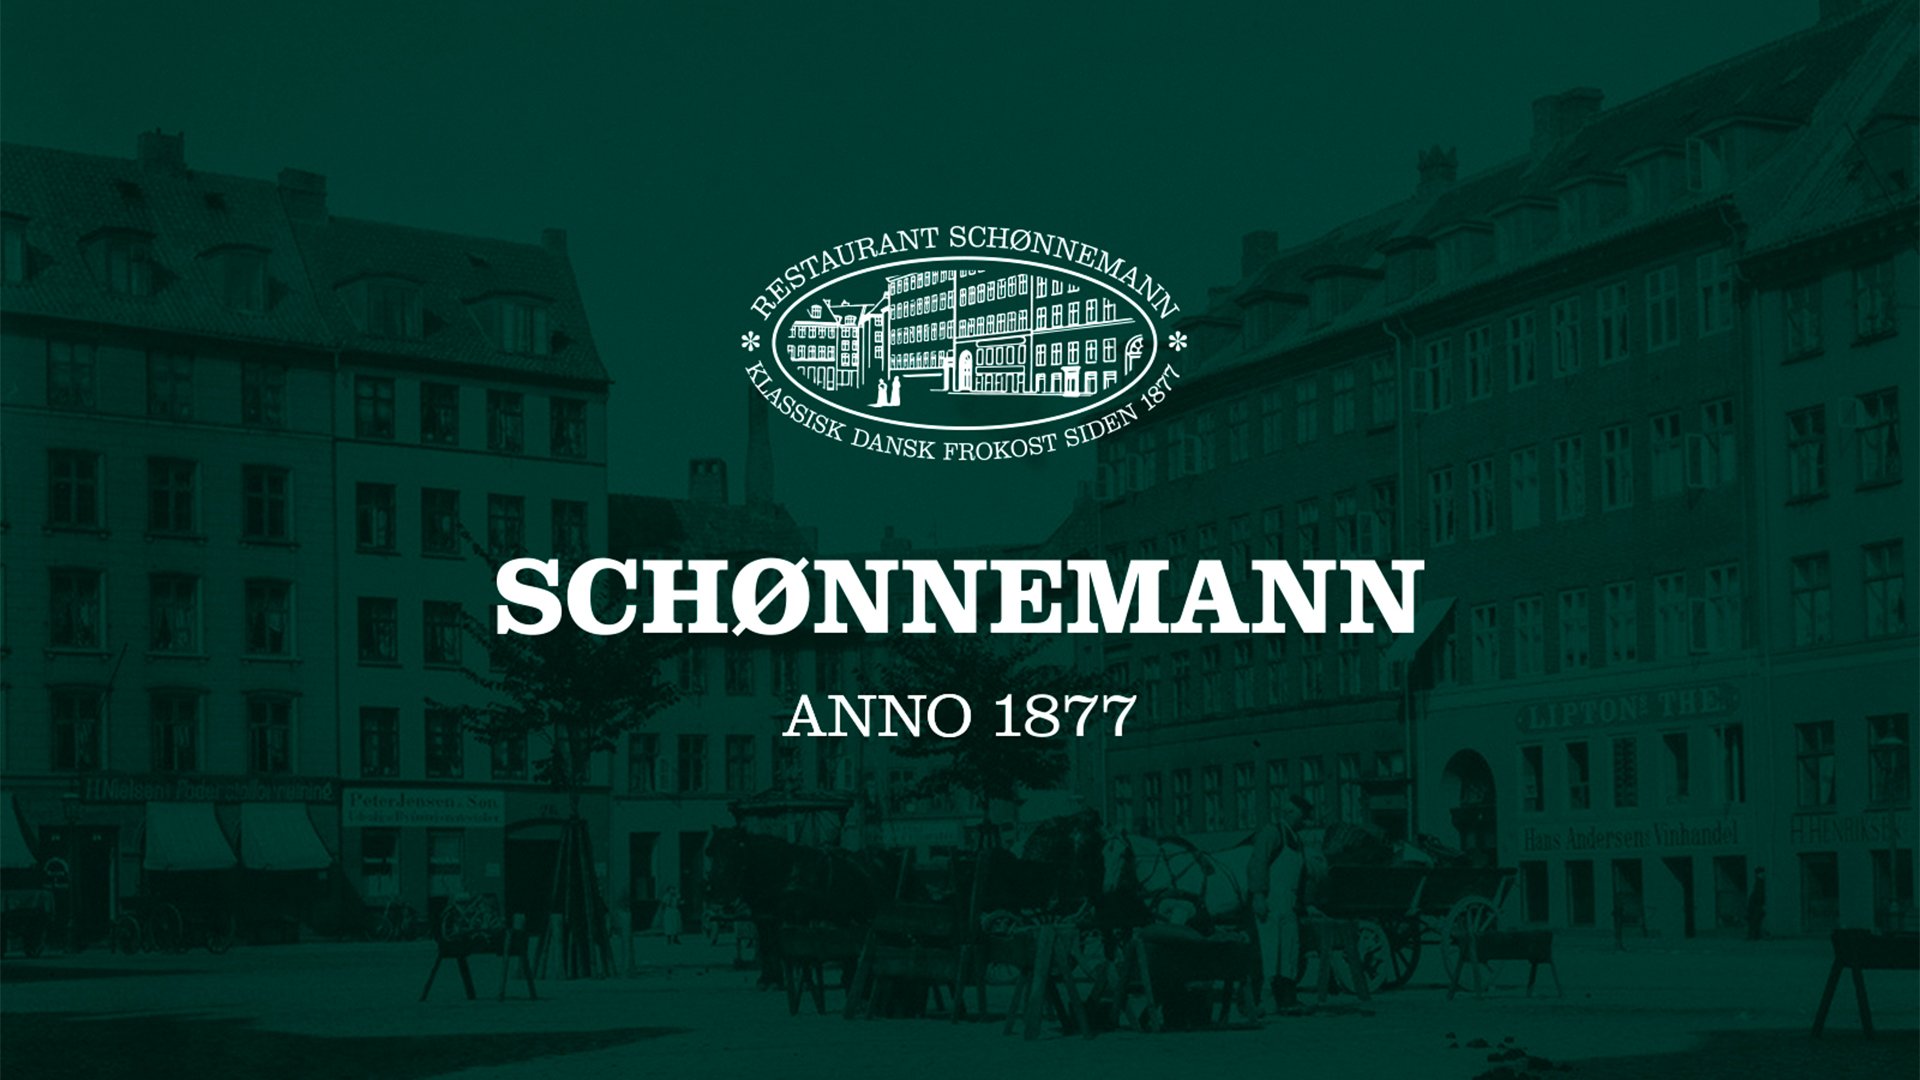 Restaurant Schoennemann